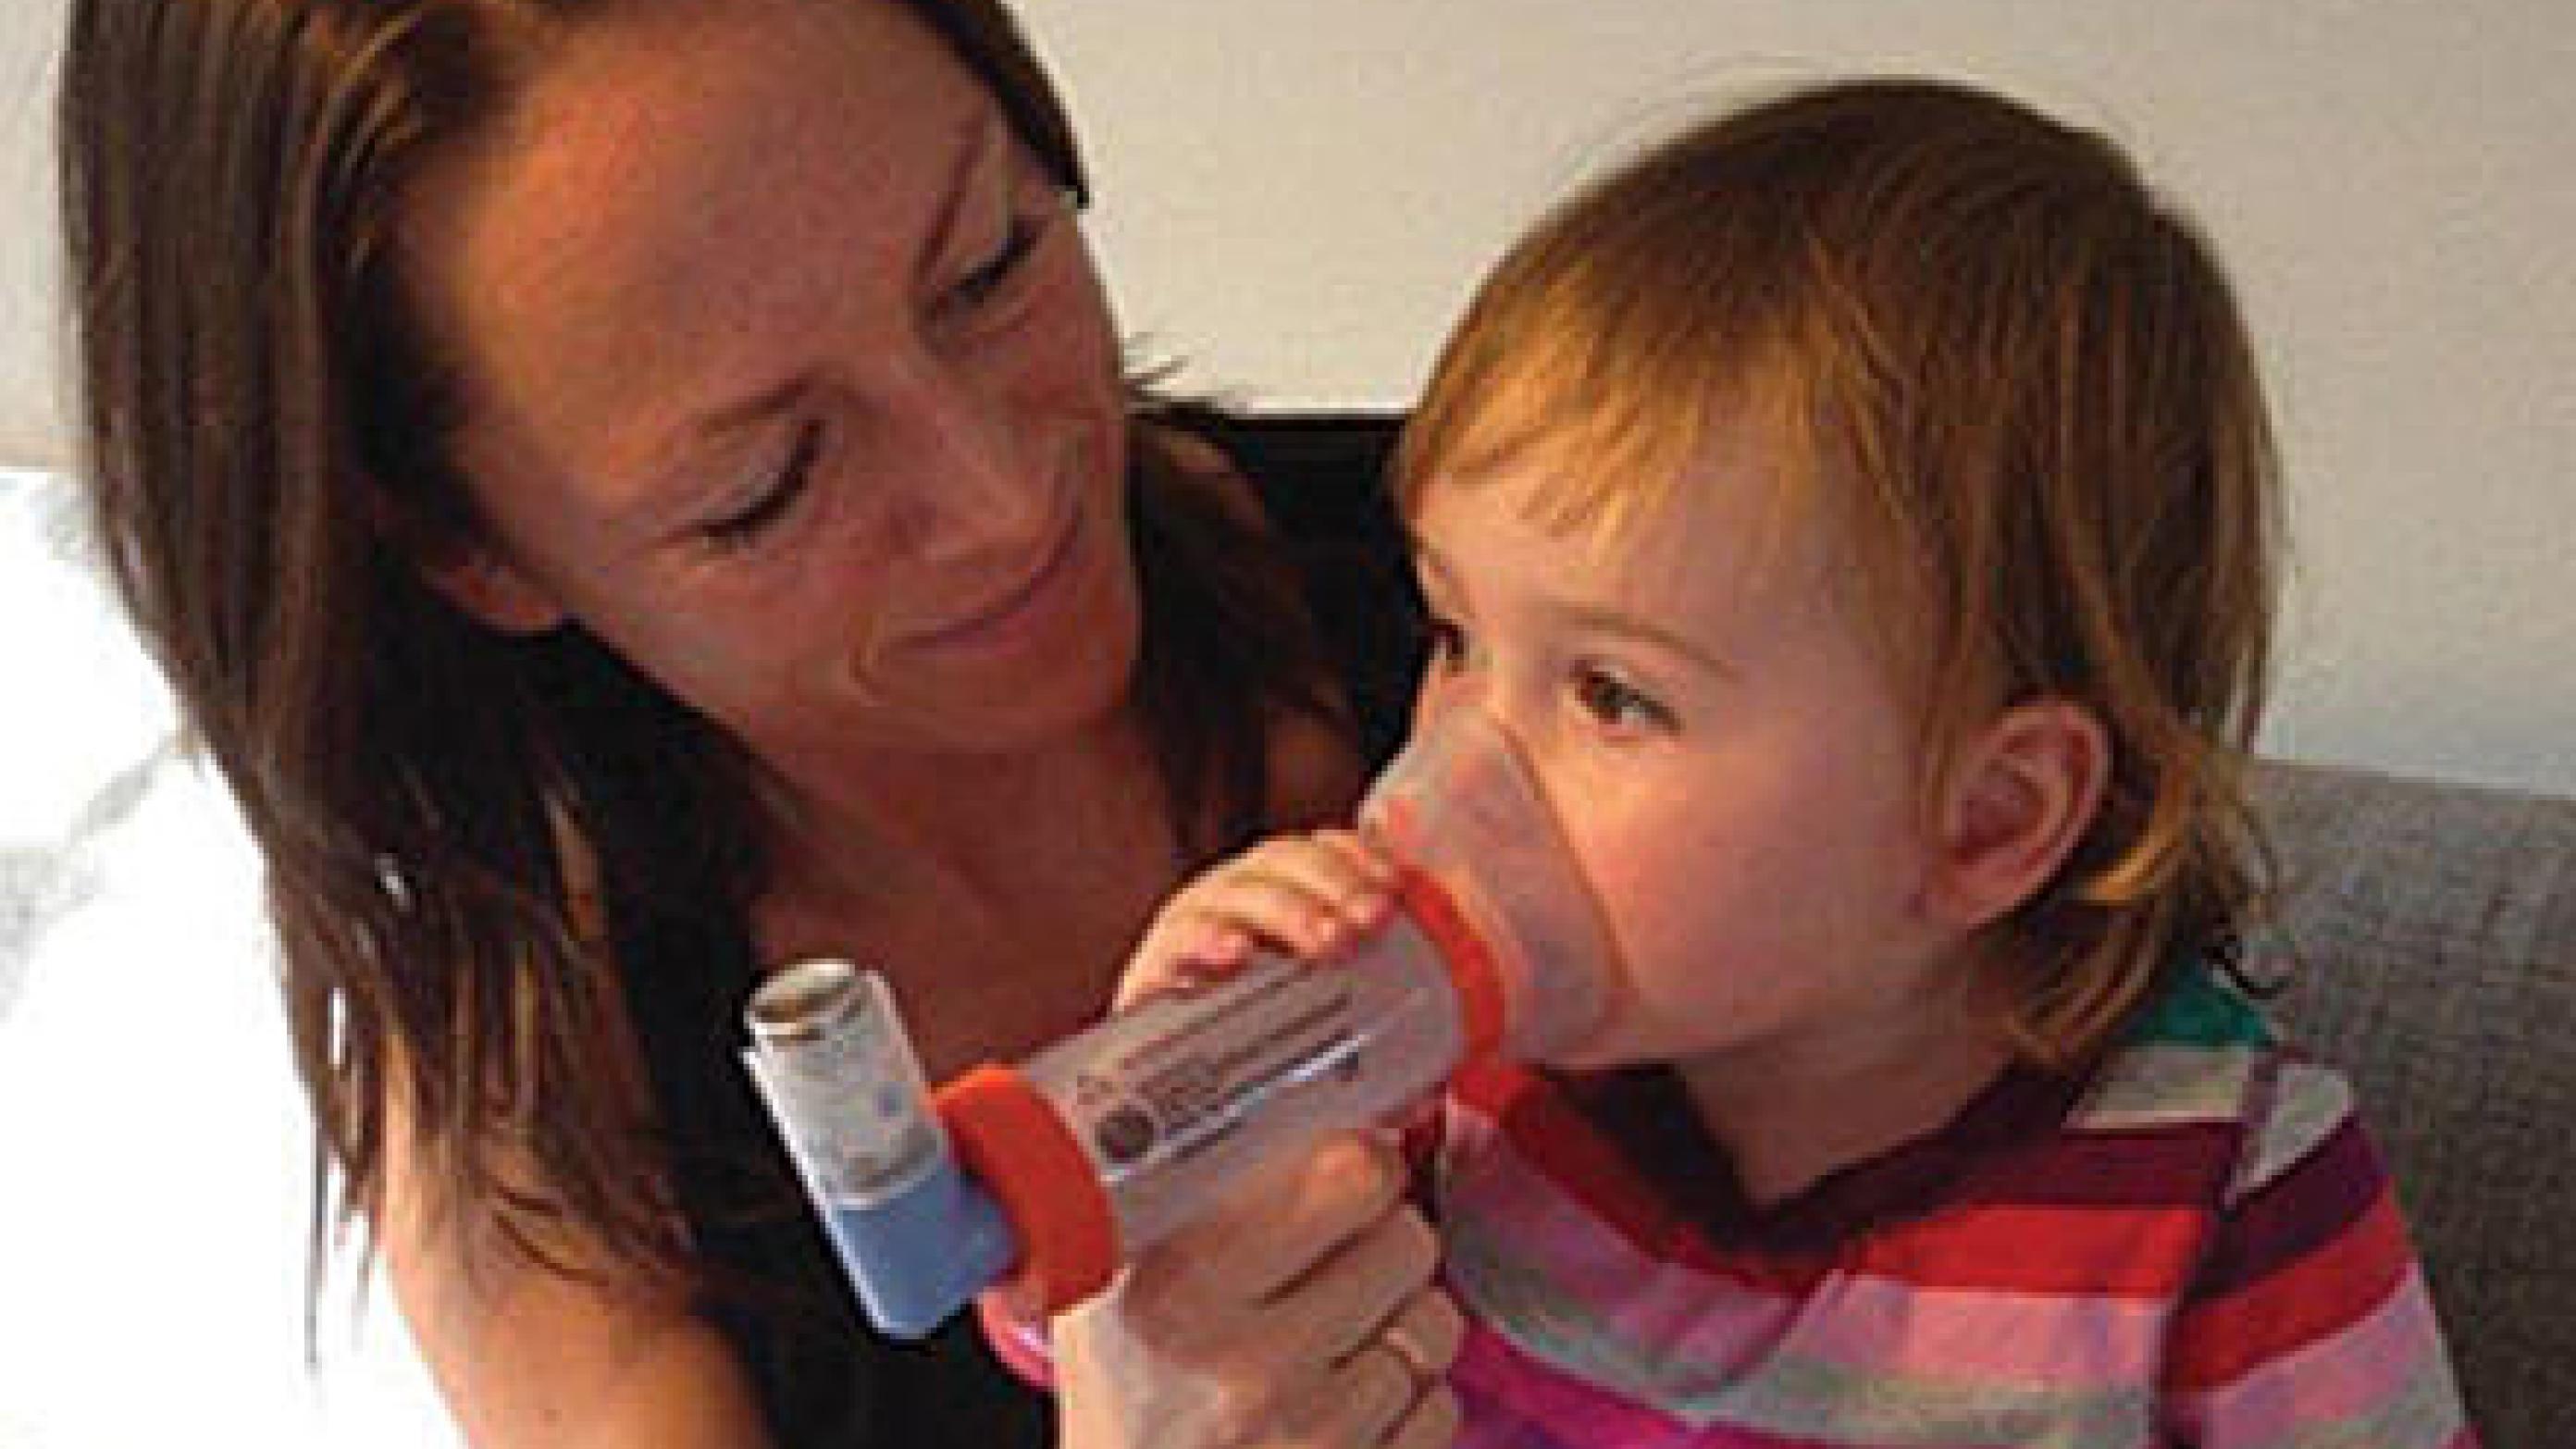 Instruktion af forældre i spacer-teknik, dosering og observation af effekt er vigtig, hvis der behandles med inhalationsmedicin.